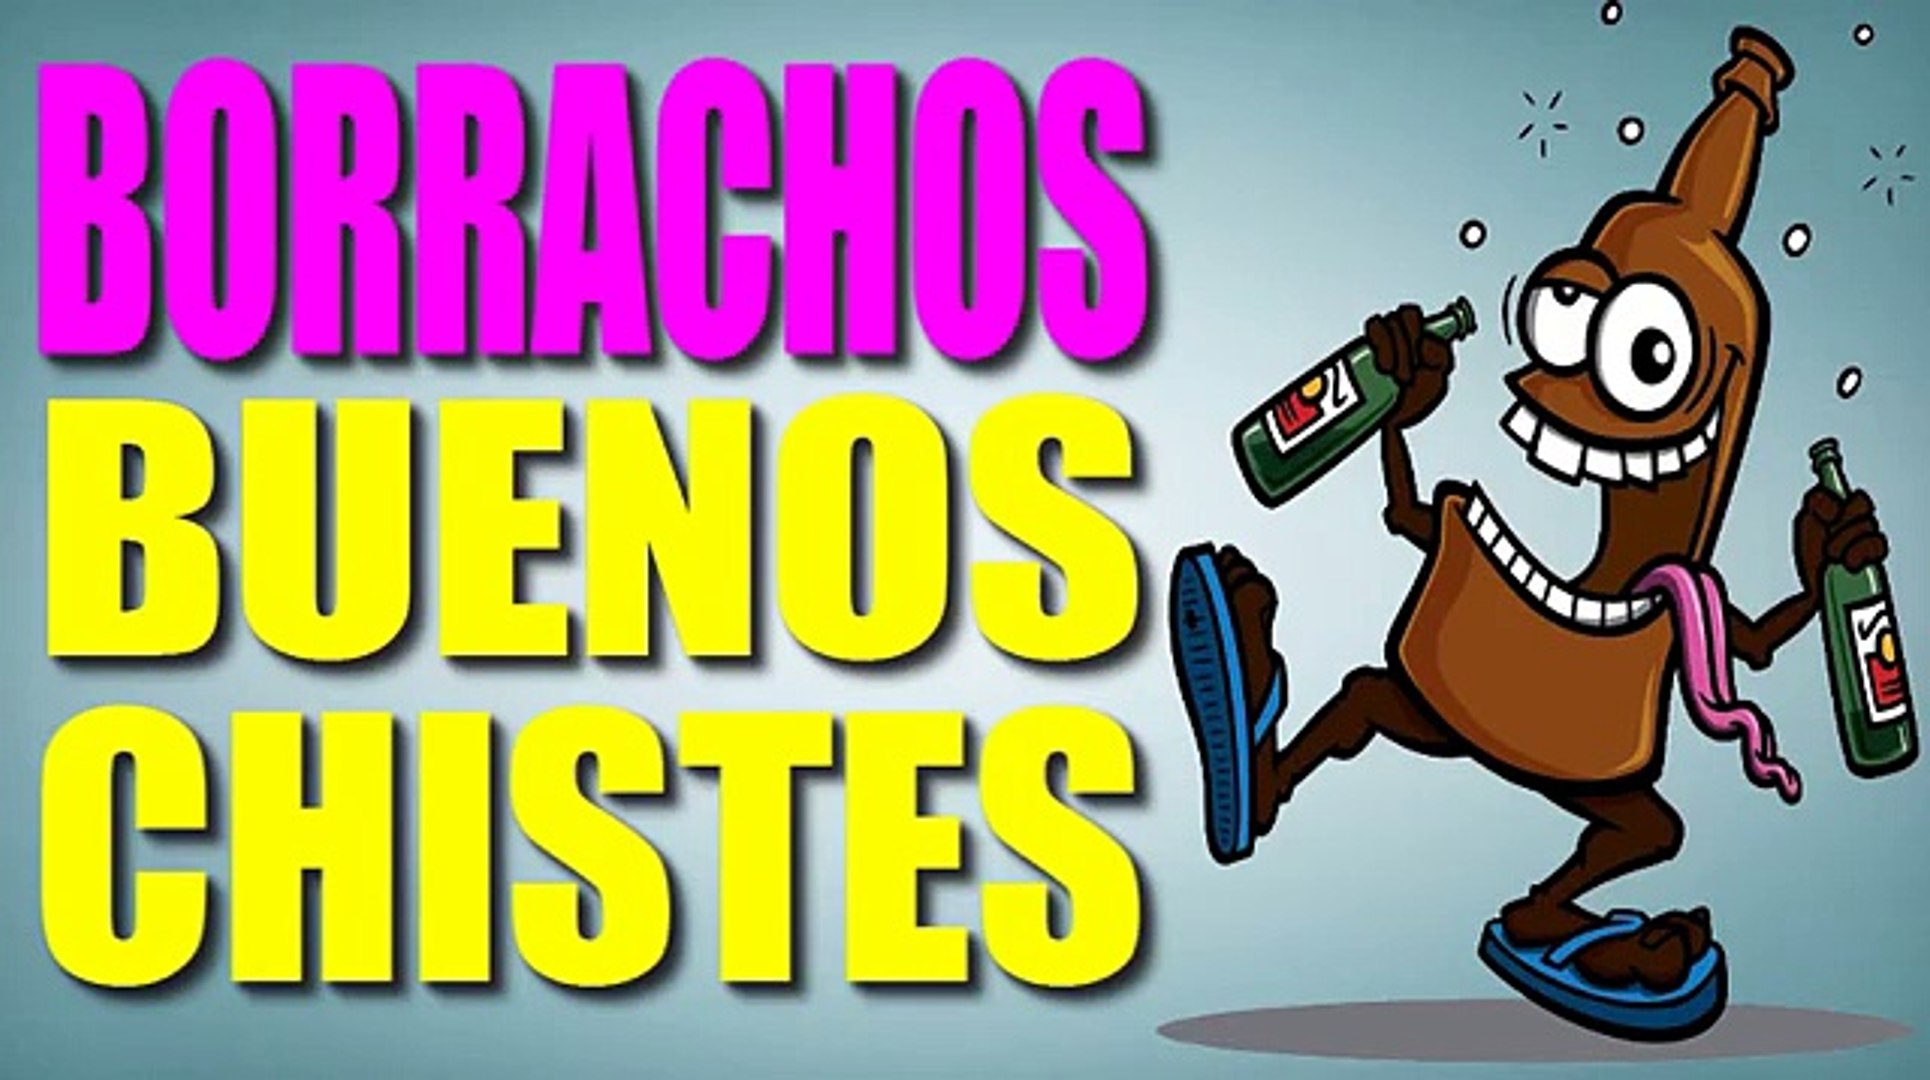 CHISTES BUENOS - CHISTES DE BORRACHOS - EPISODIO #1 - CHISTES CORTOS -  CHISTES GRACIOSOS - video Dailymotion